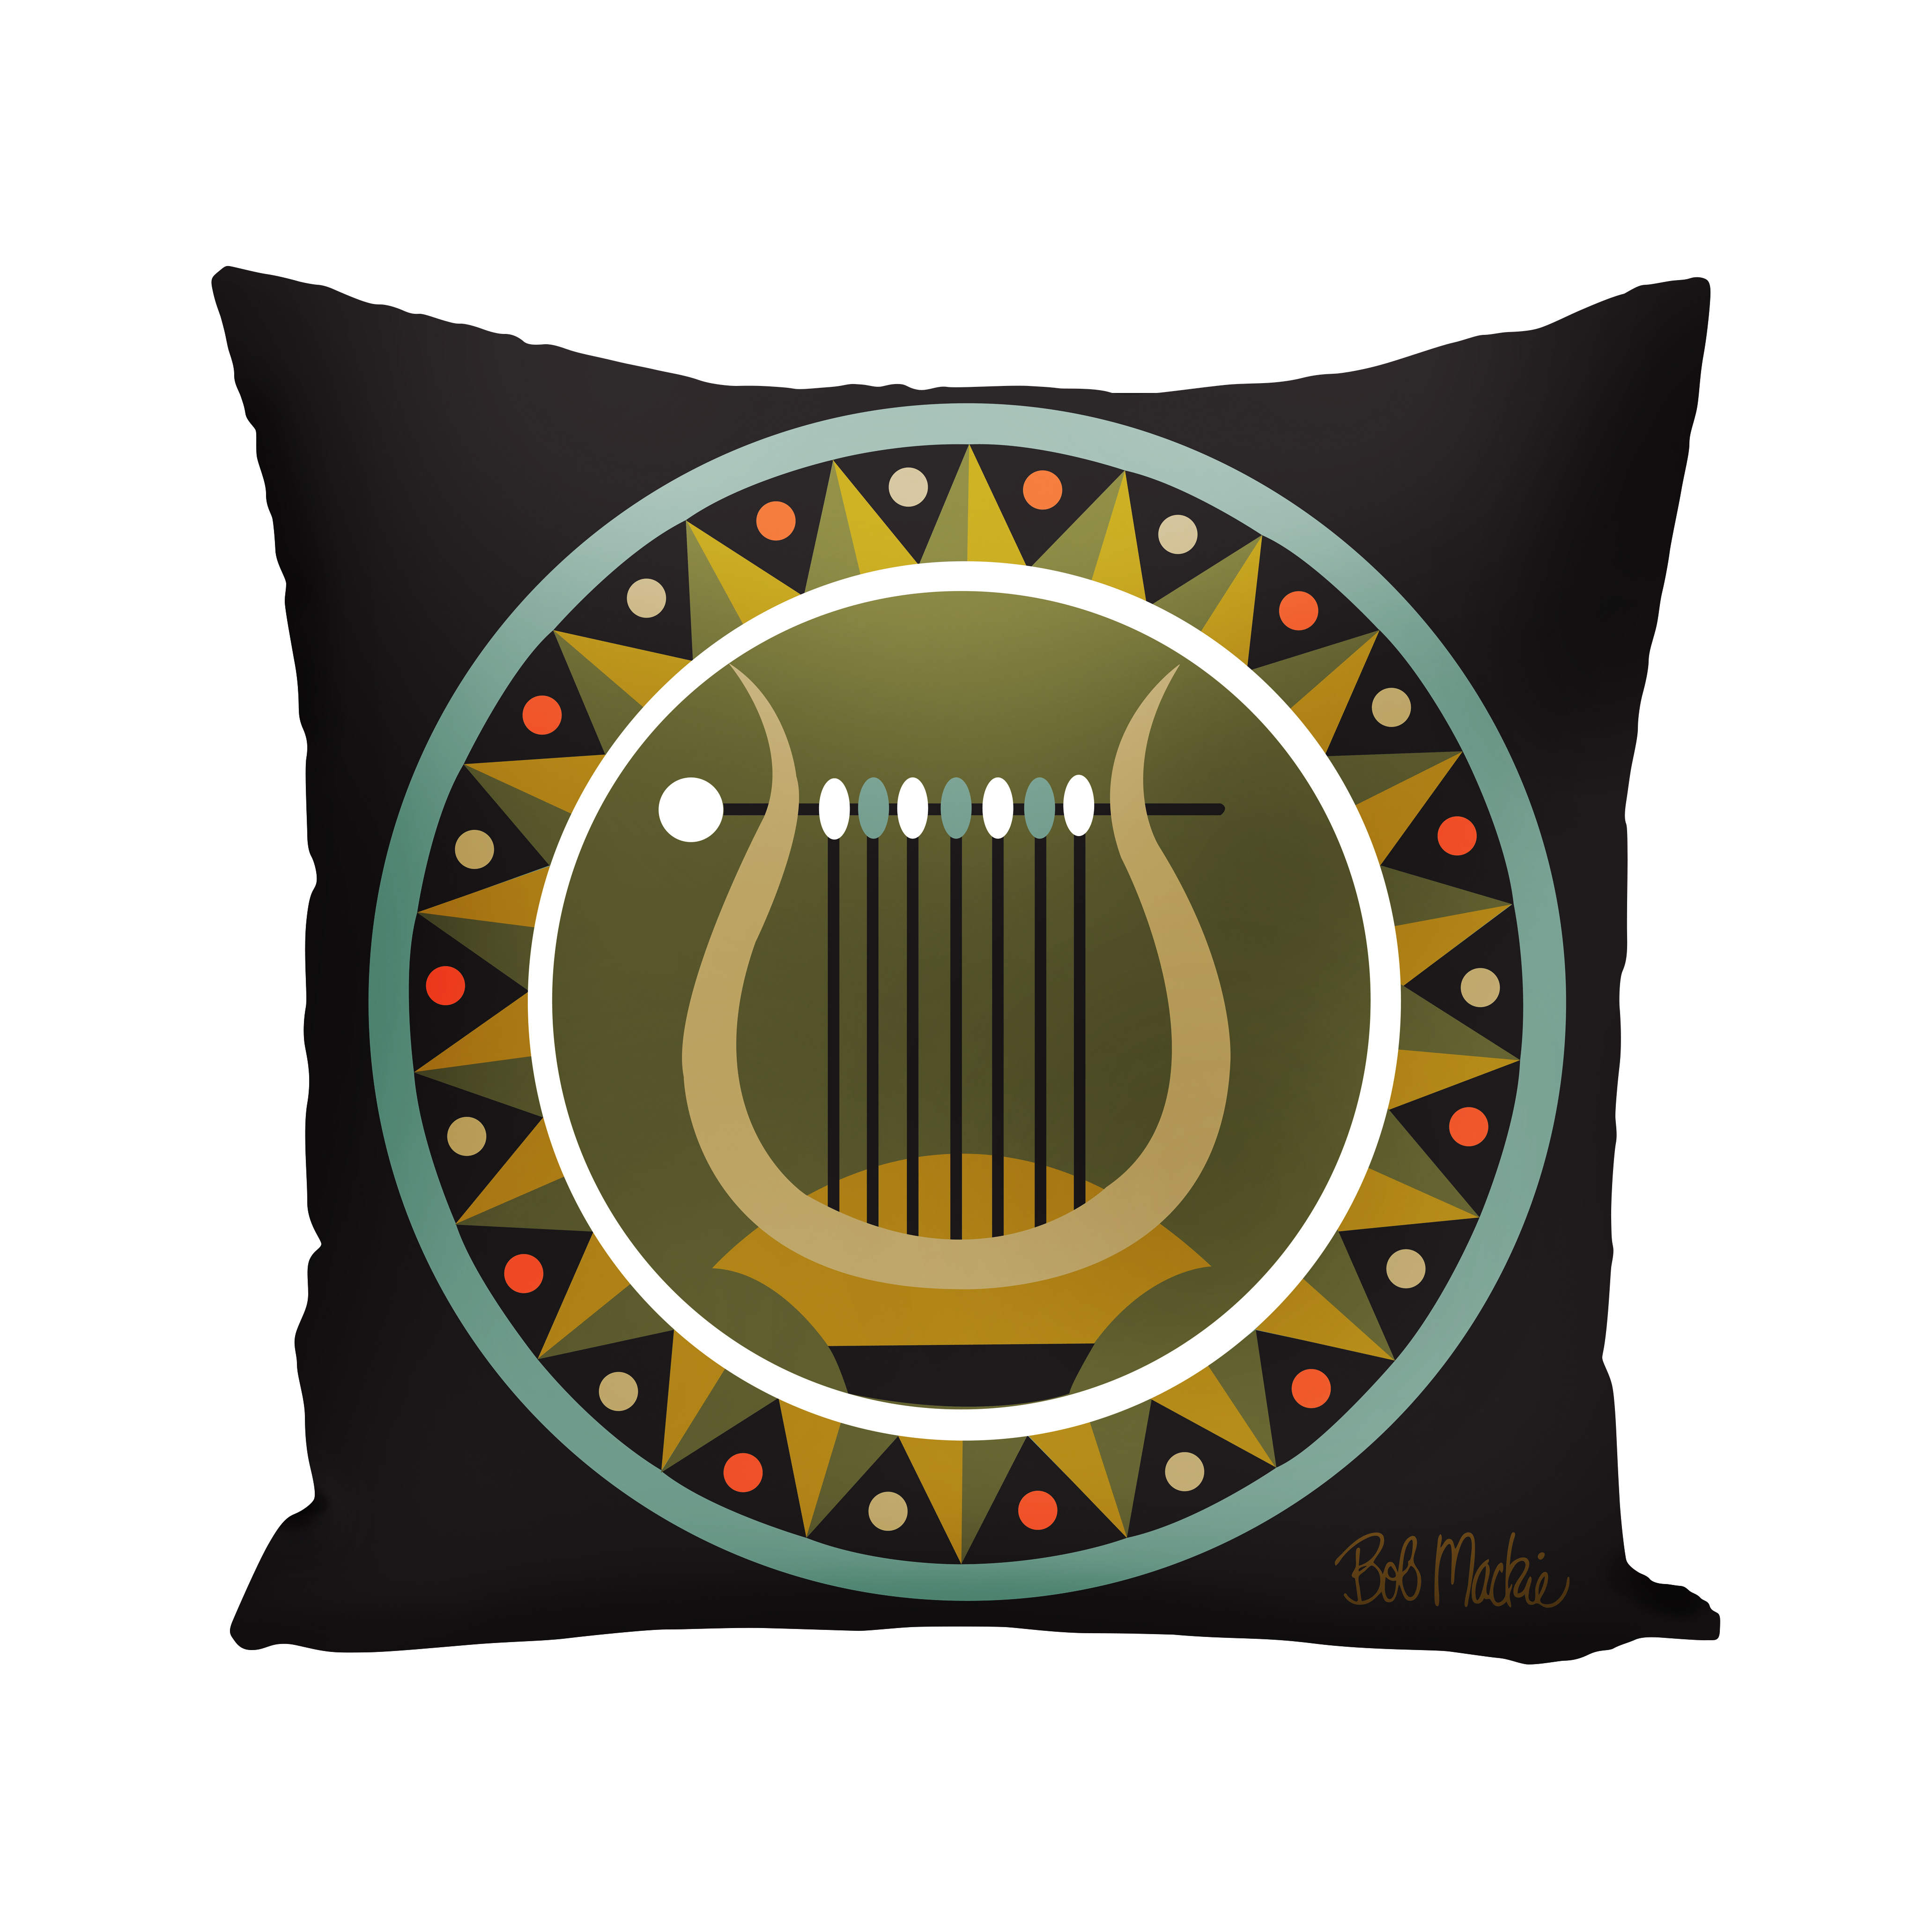 Tribal Greek Lyre 20"x20" Indoor-Outdoor Decorative Throw Pillow - image 1 of 2